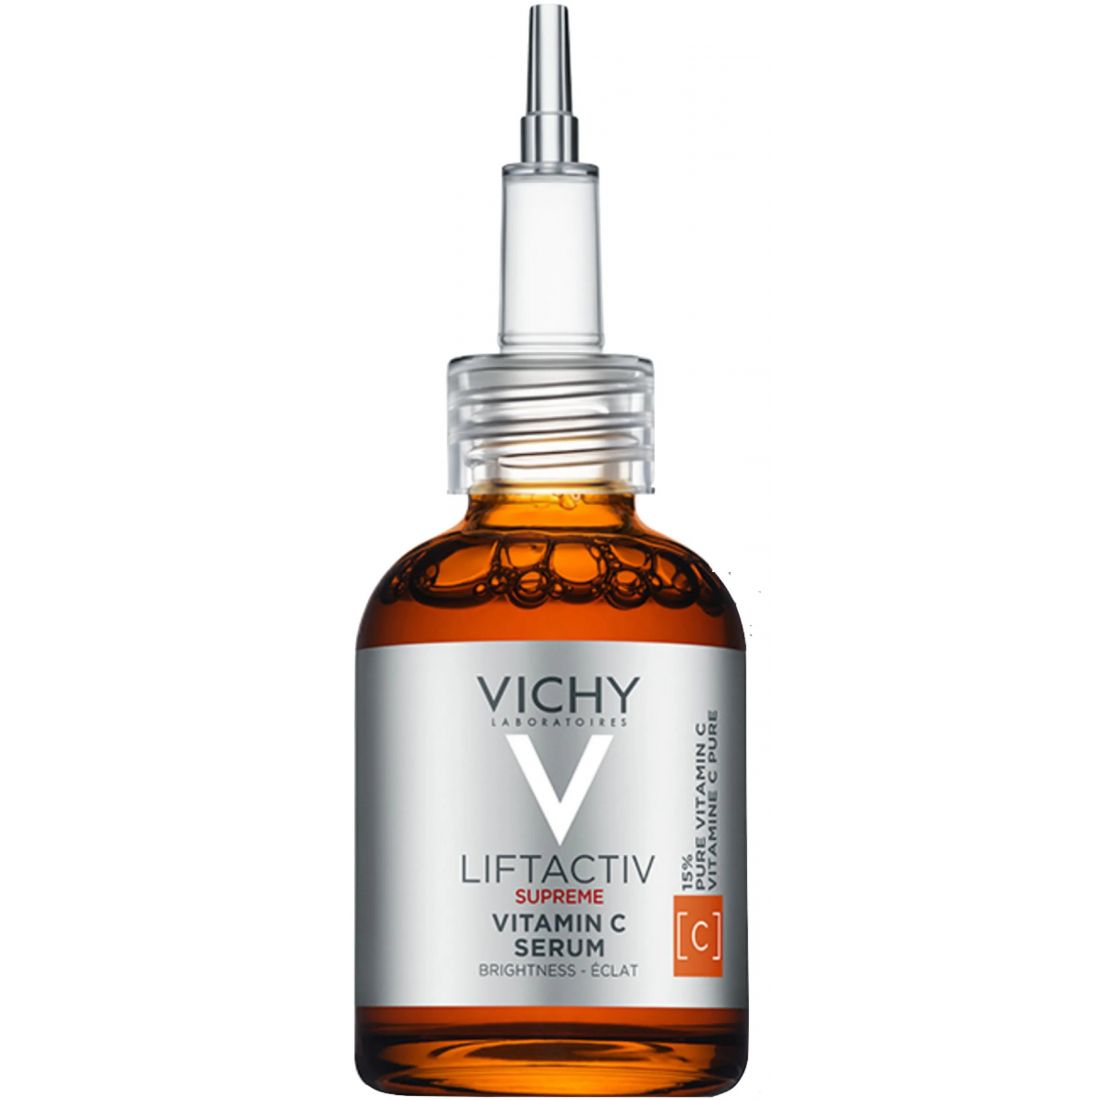 Vichy - Sérum à la Vitamine C 'Liftactiv Supreme' - 20 ml